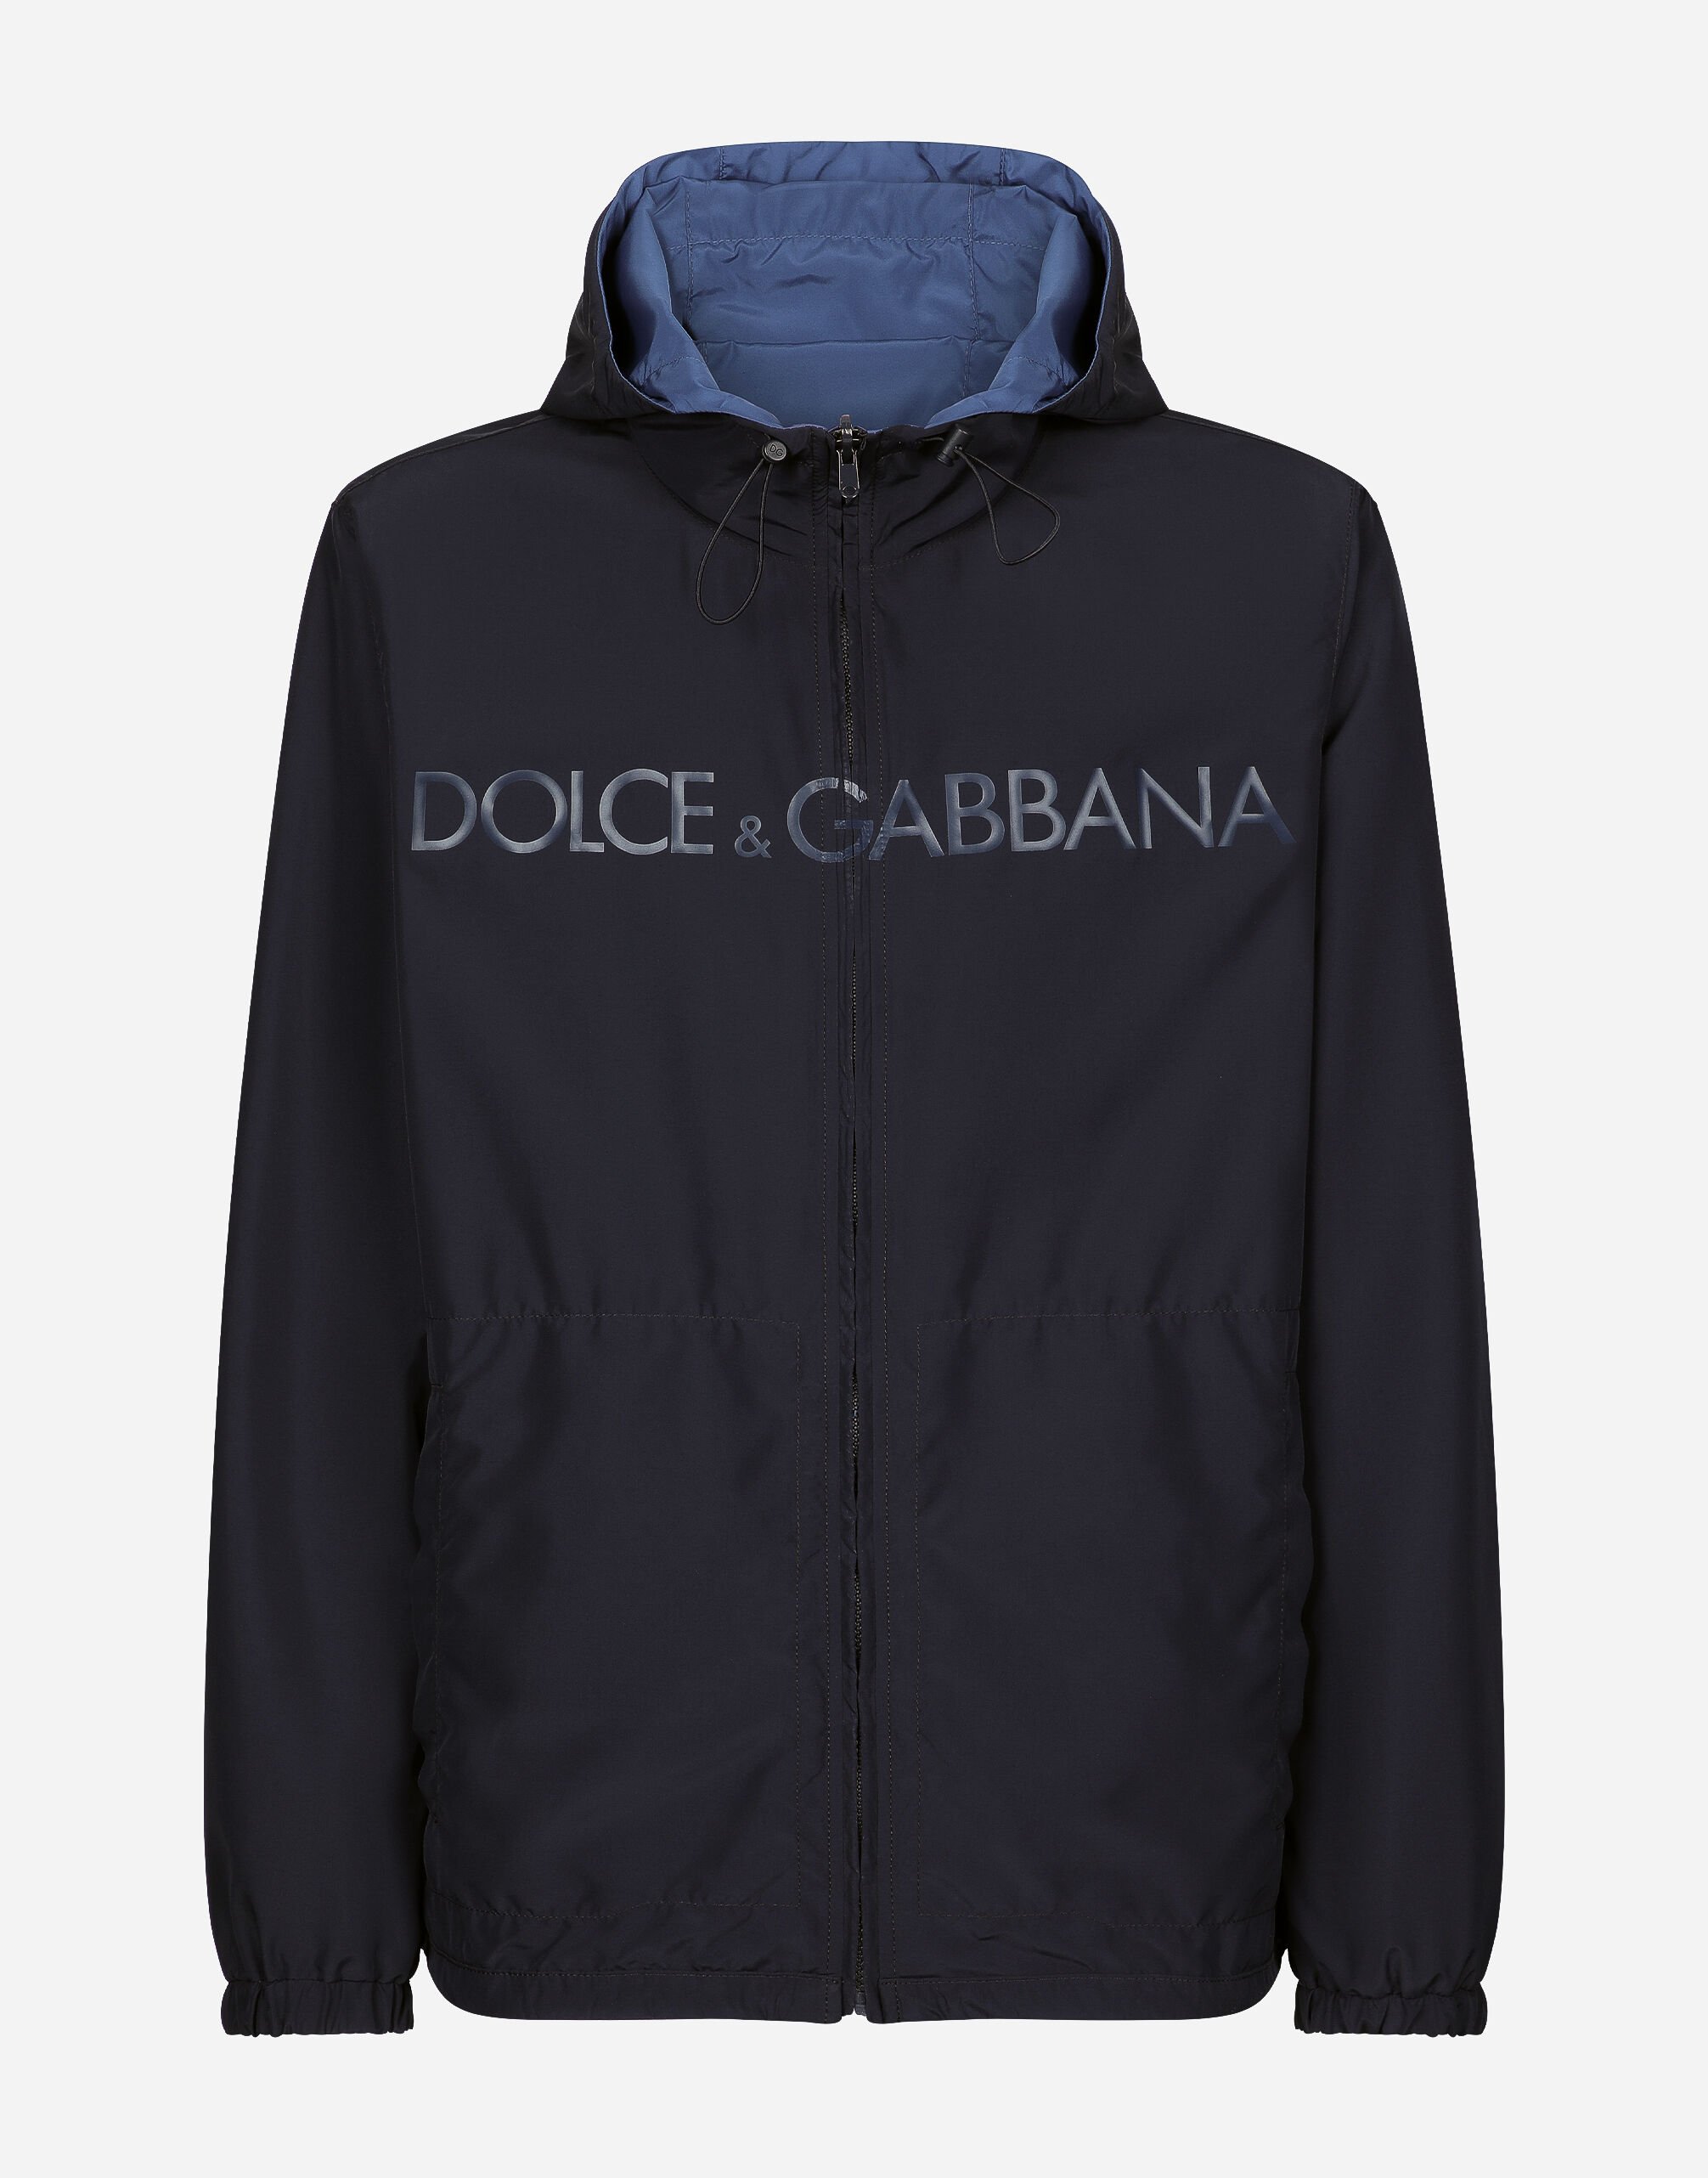 Dolce & Gabbana Giubbino reversibile con cappuccio con logo Blu G9AXYTGH666